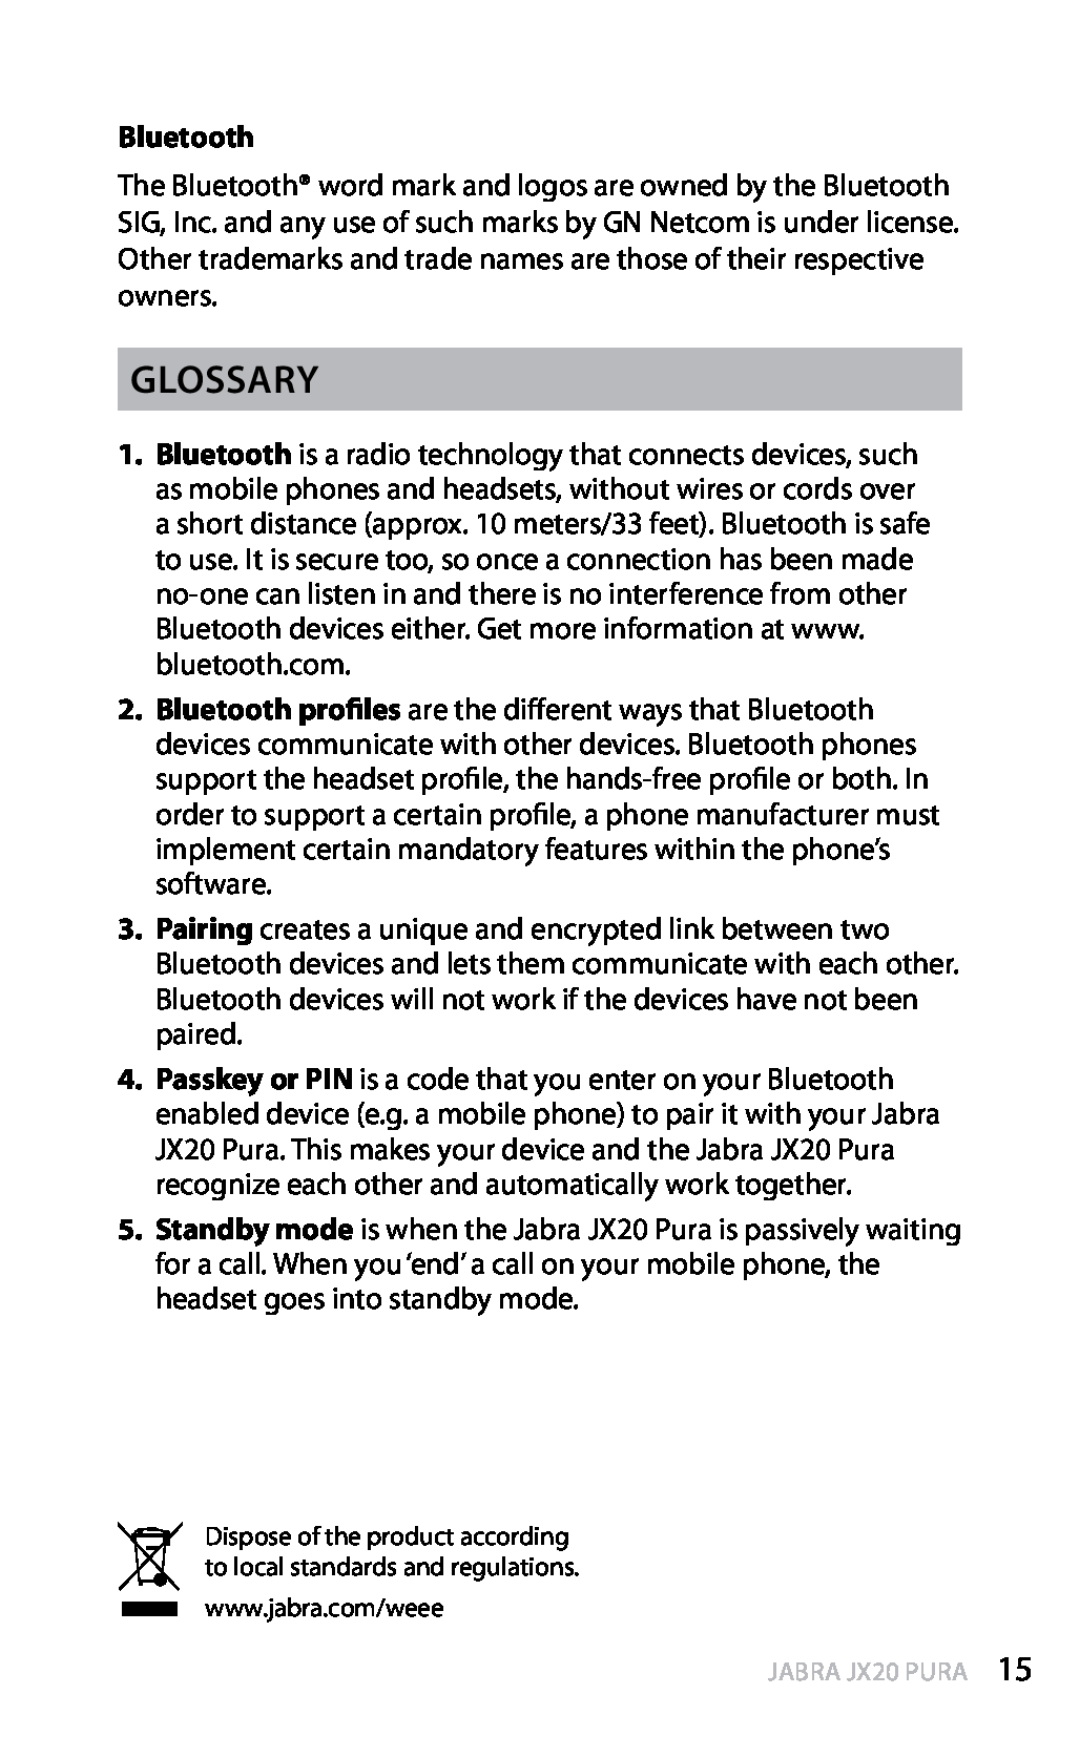 Jabra JX20 manual Glossary, Bluetooth, english 